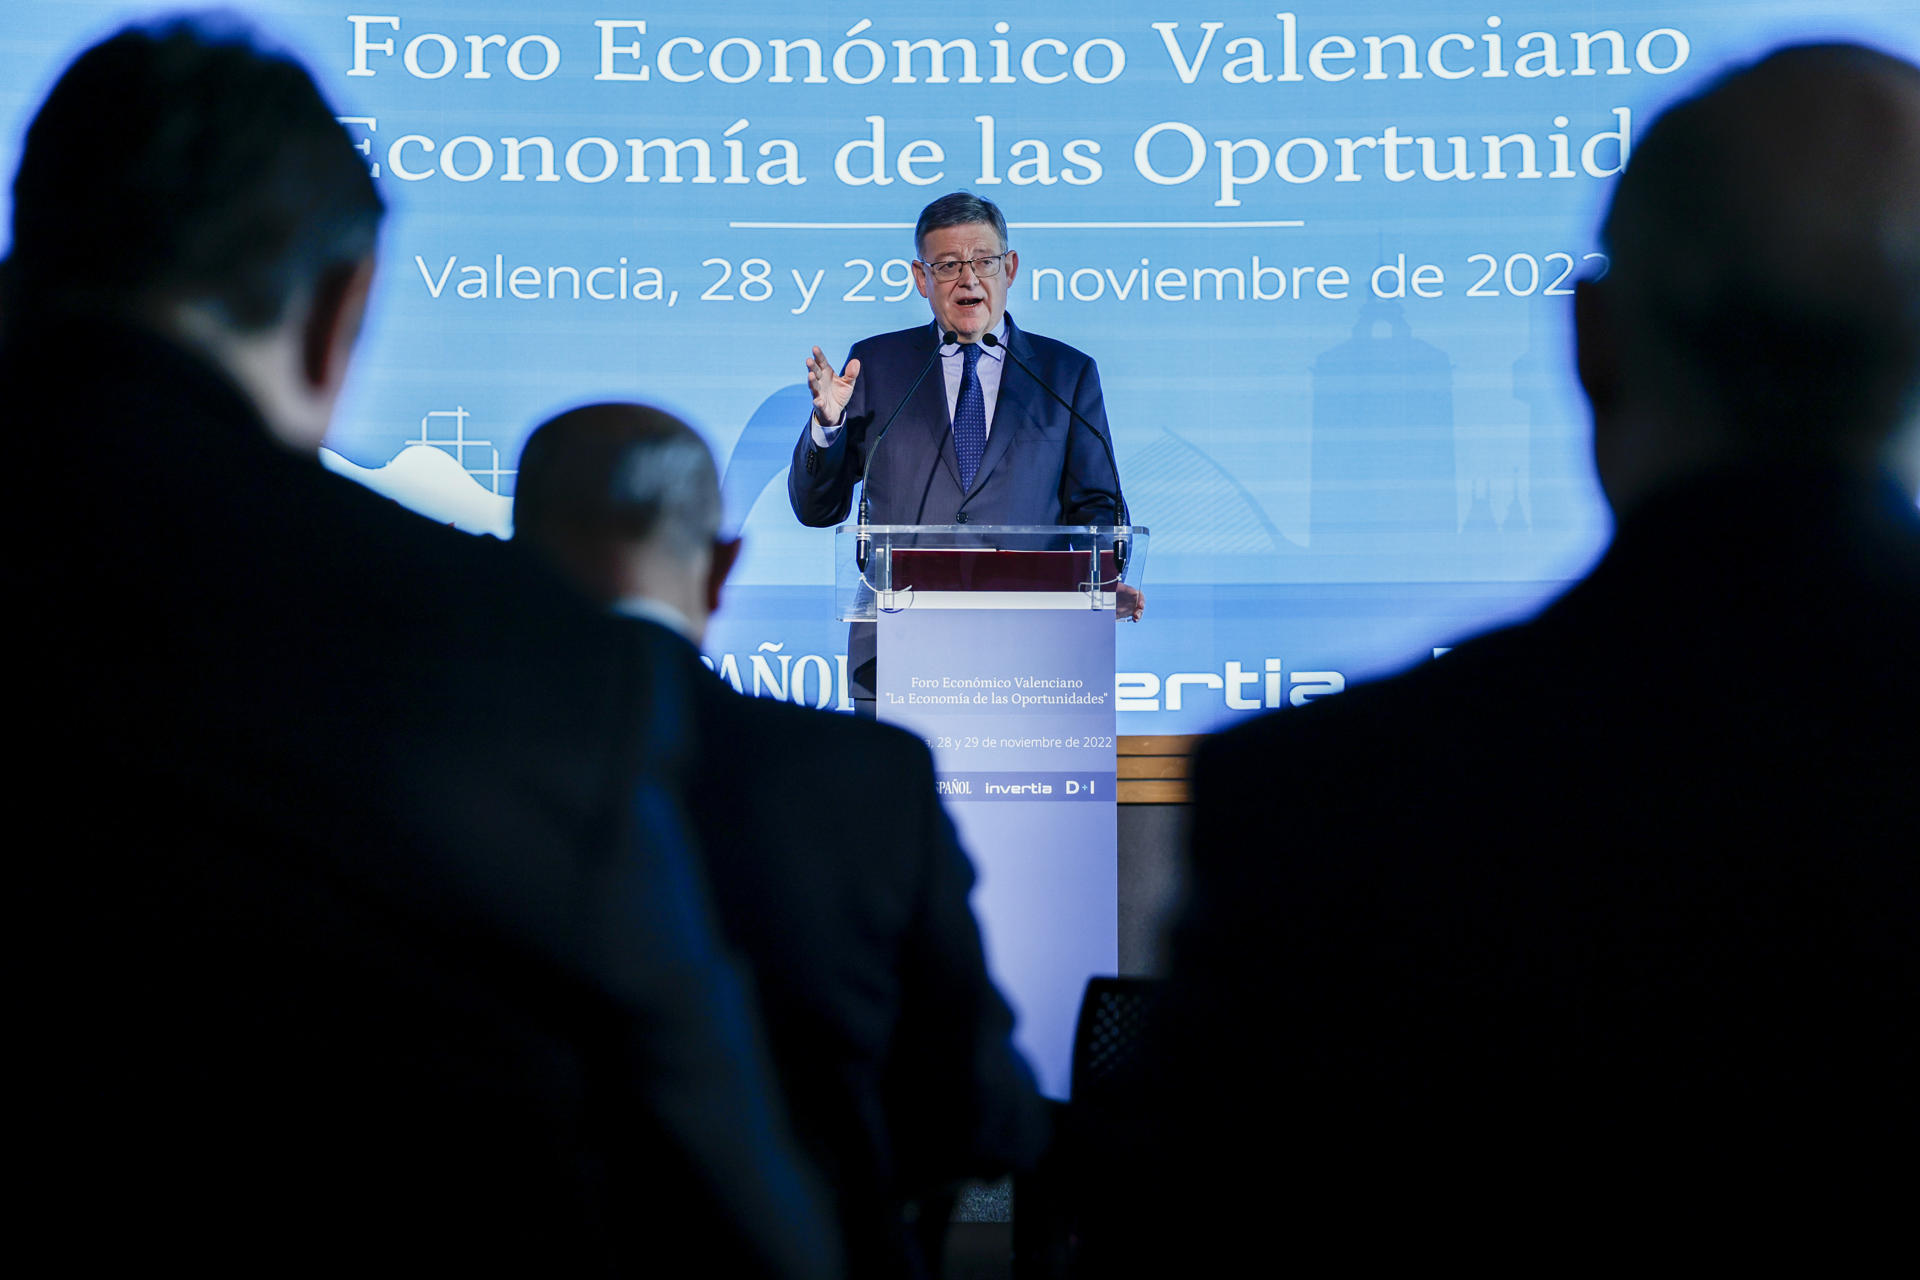 VALENCIA, 29/11/2022.- El president de la Generalitat, Ximo Puig, participa en la apertura del I Foro Económico Valenciano "La economía de las oportunidades", organizado por El Español, Invertia y D+I.EFE/ Biel Aliño